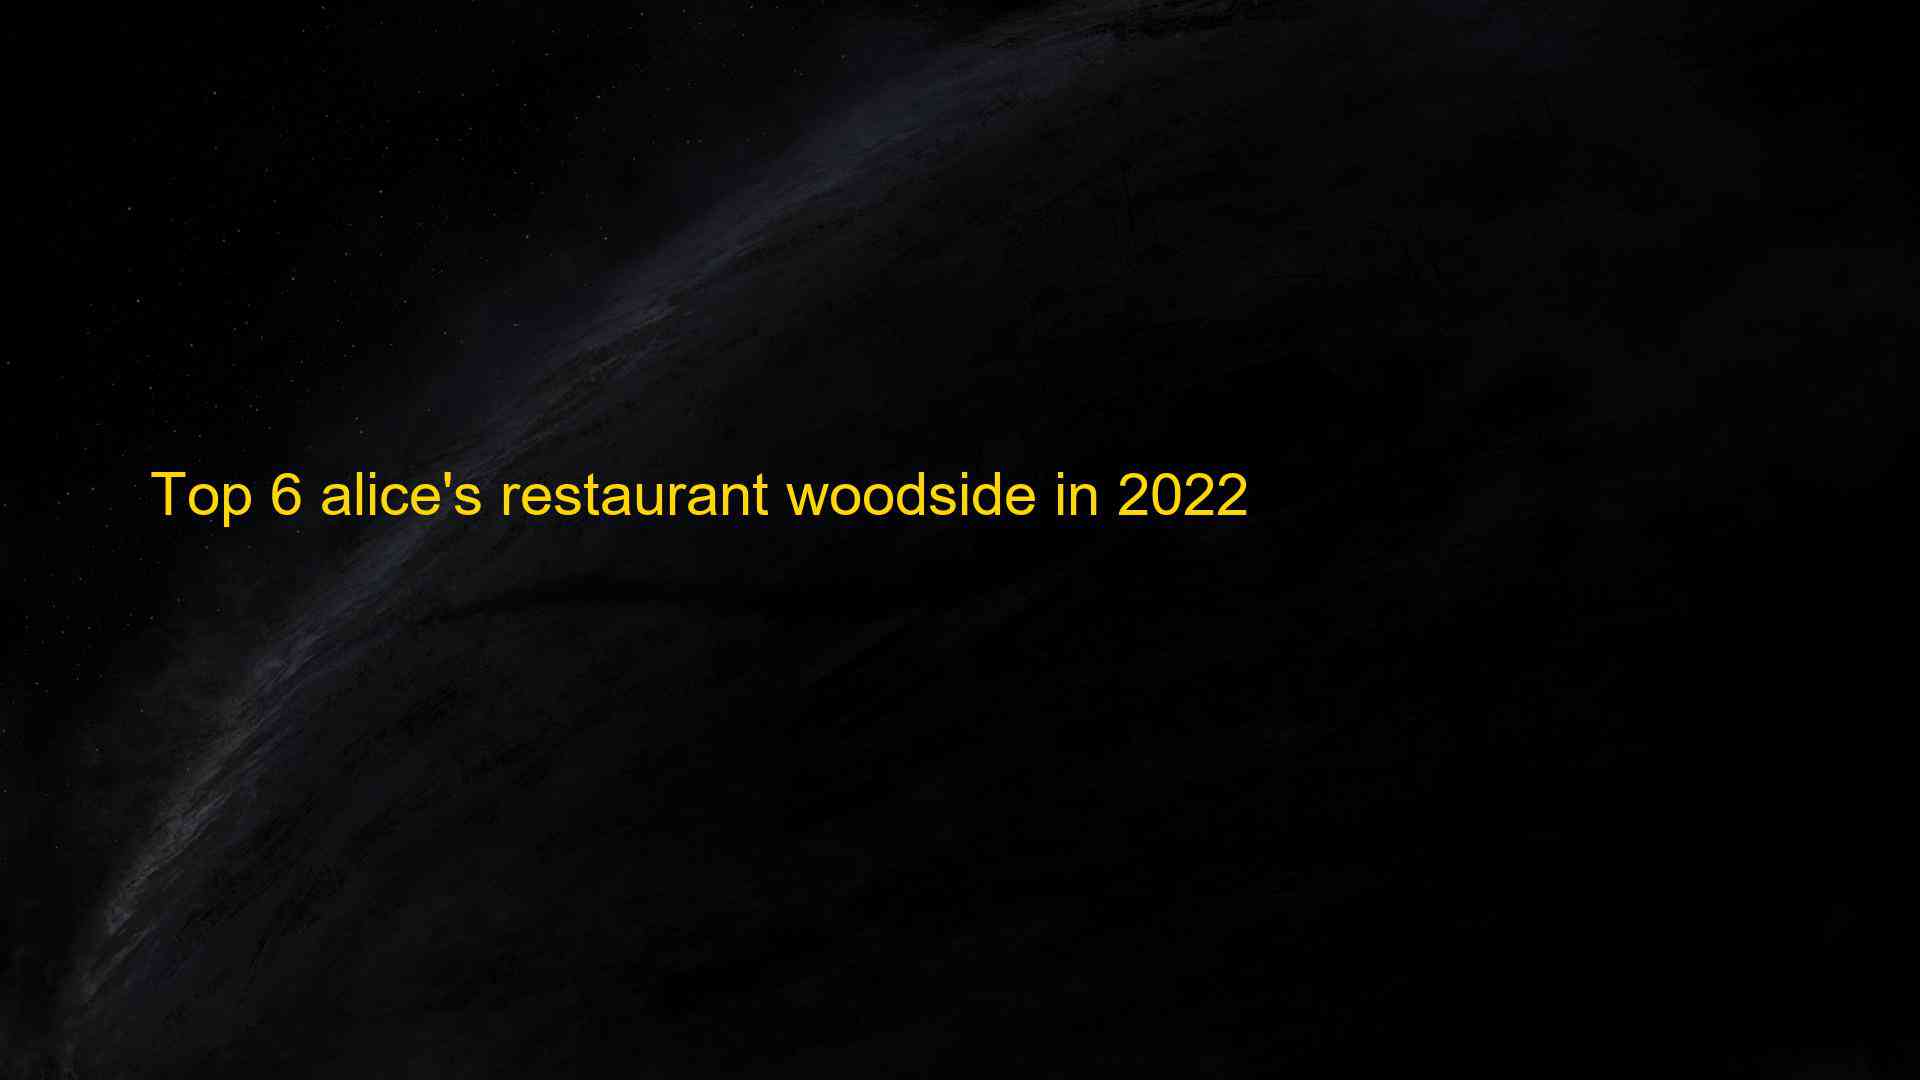 Top 6 alices restaurant woodside in 2022 1662828807